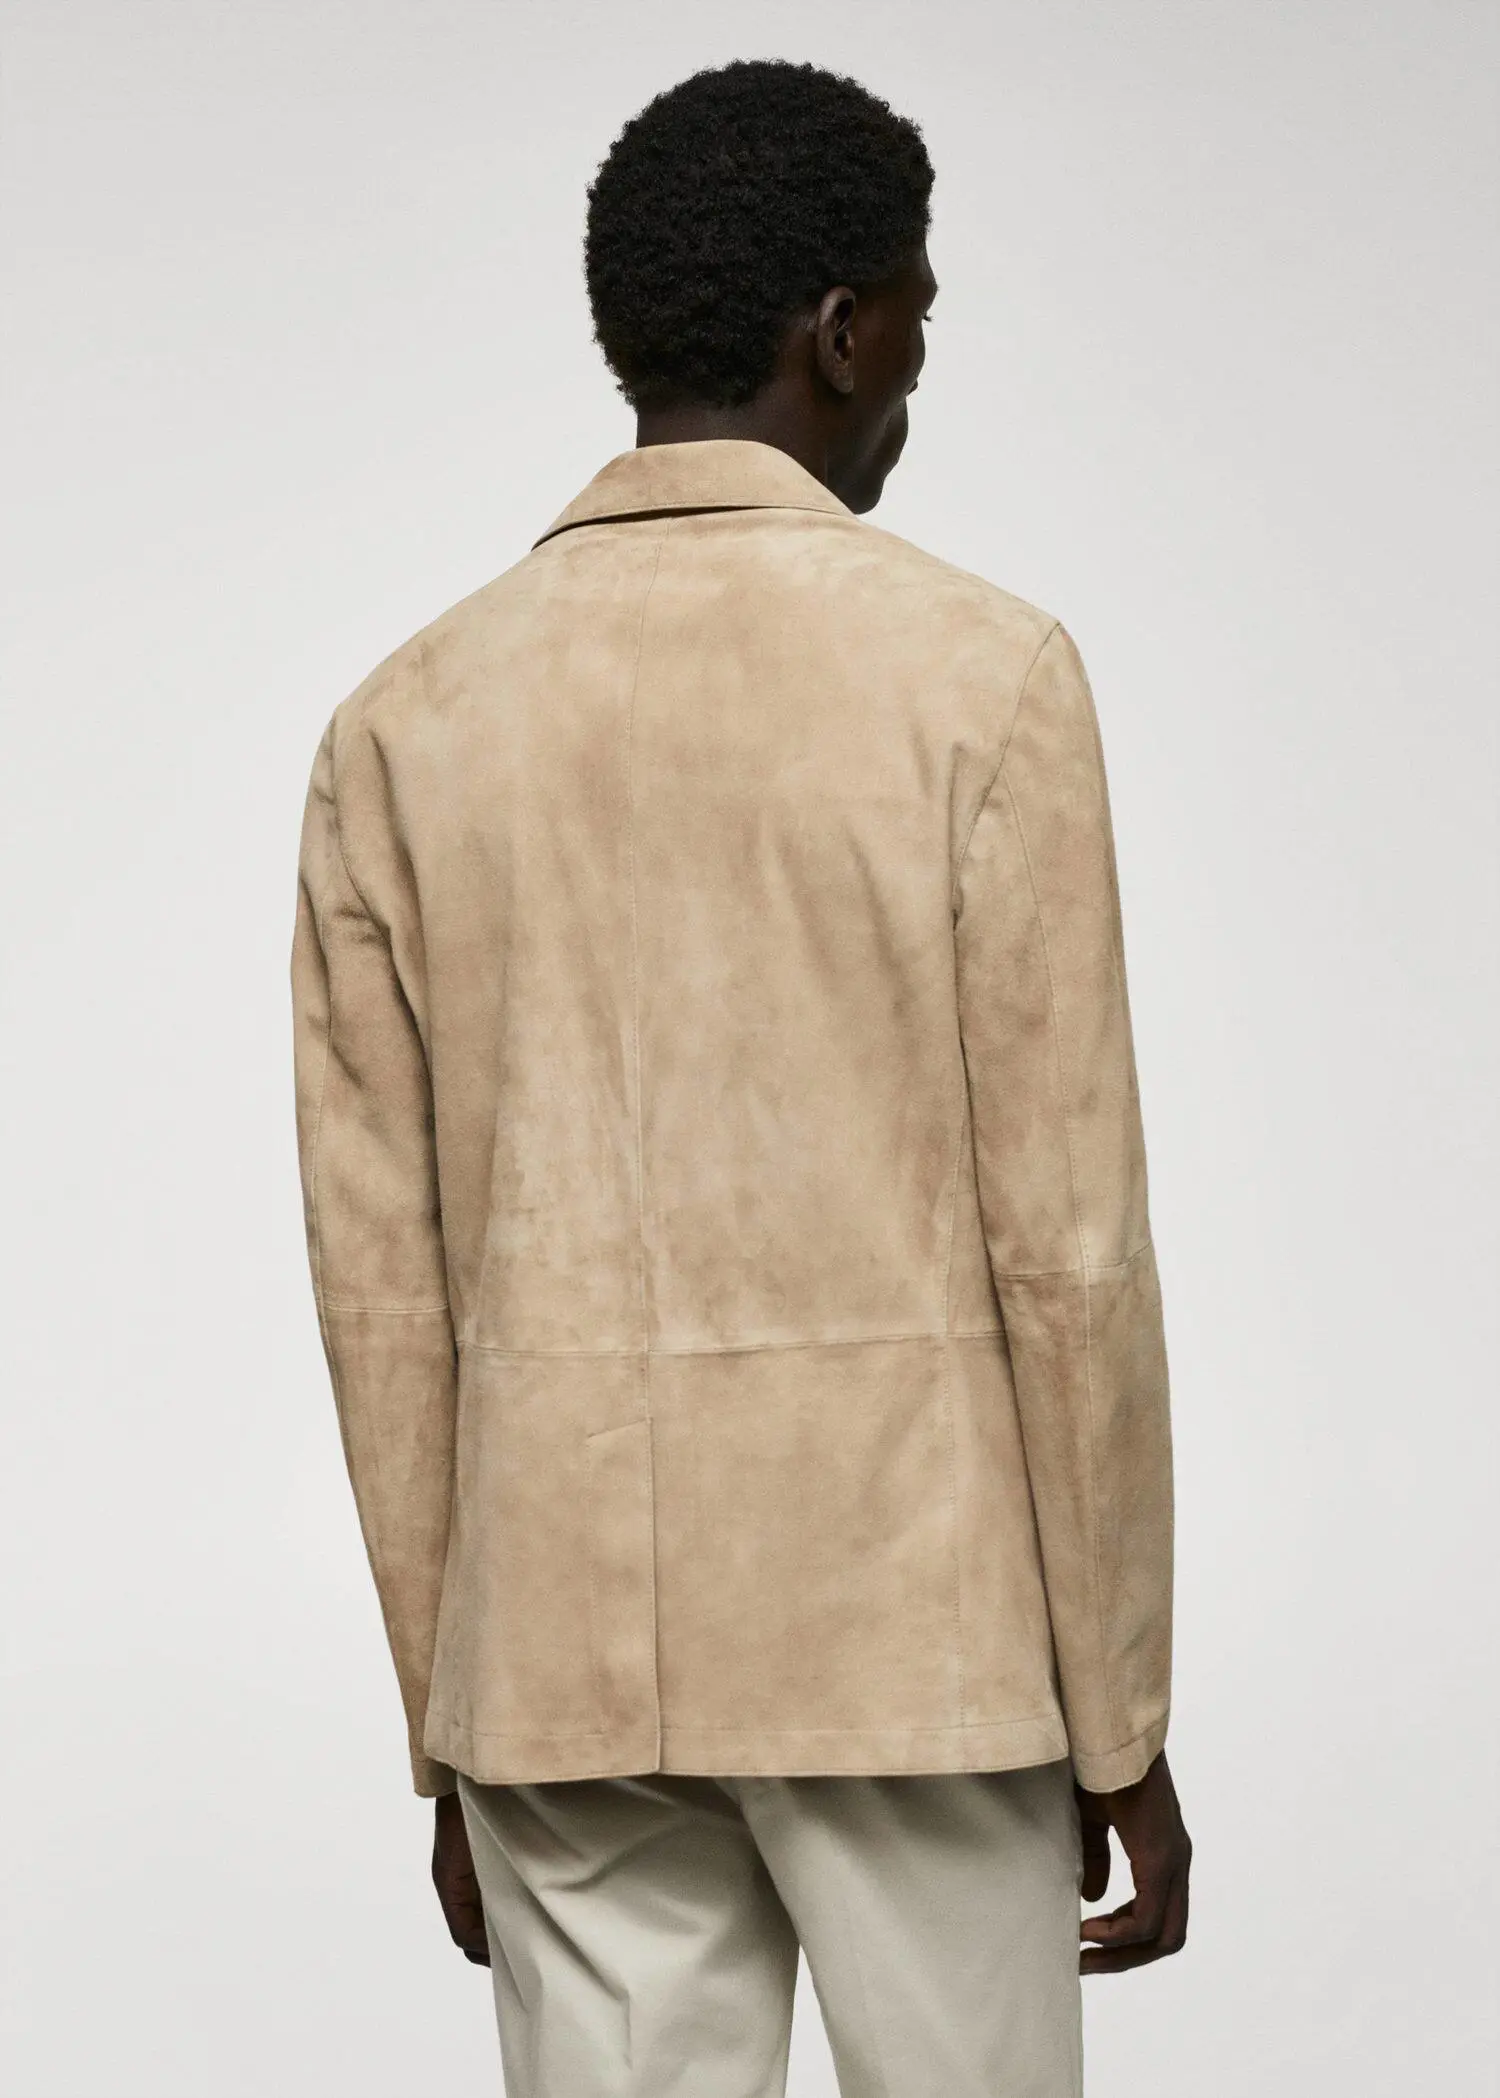 Mango 100% suede leather jacket. 3